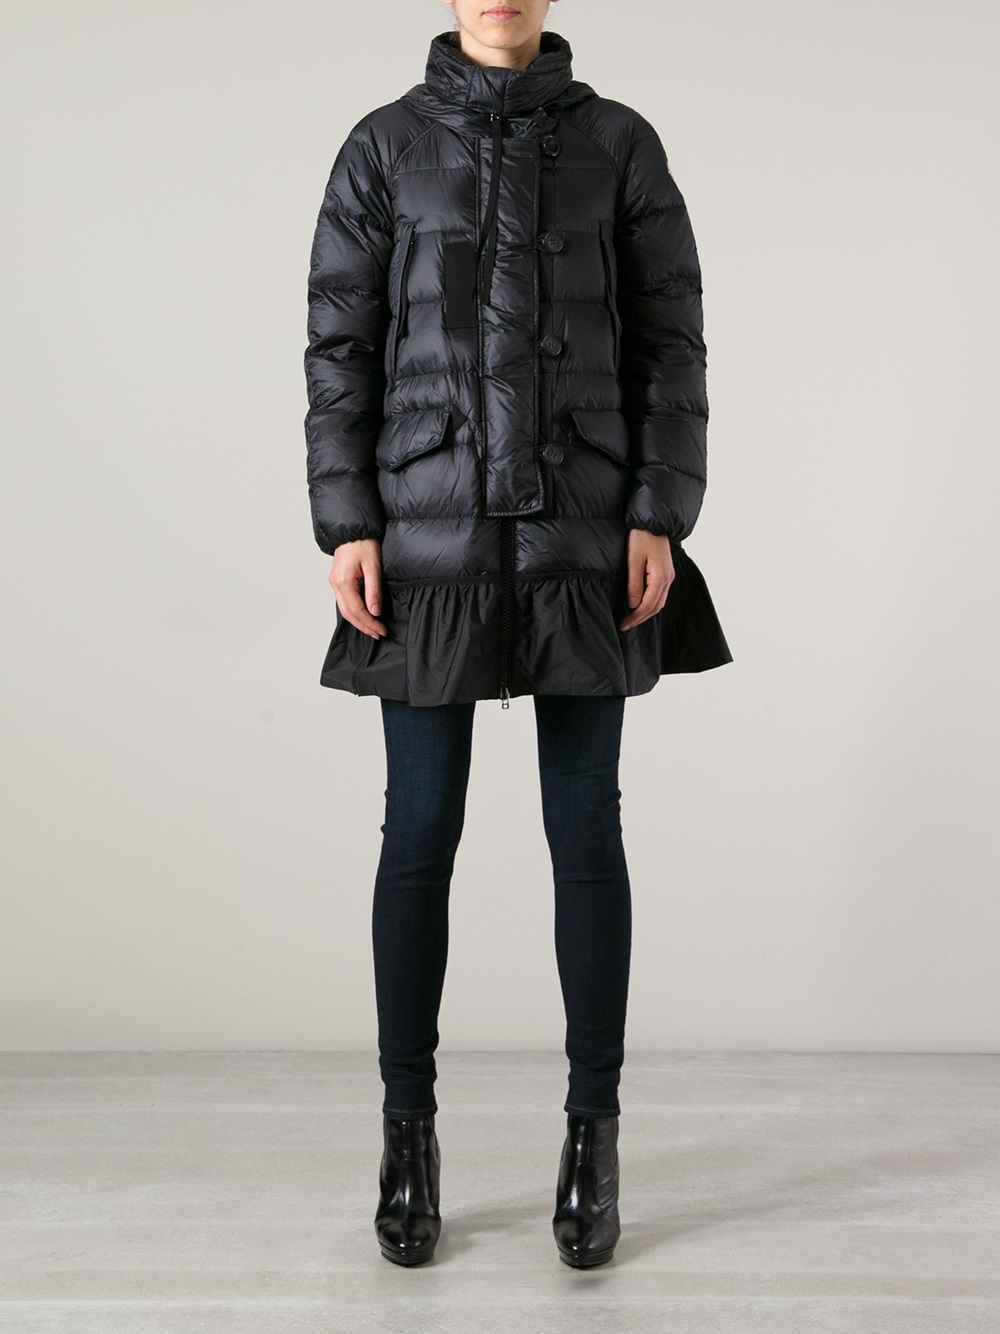 Moncler women's winter jackets